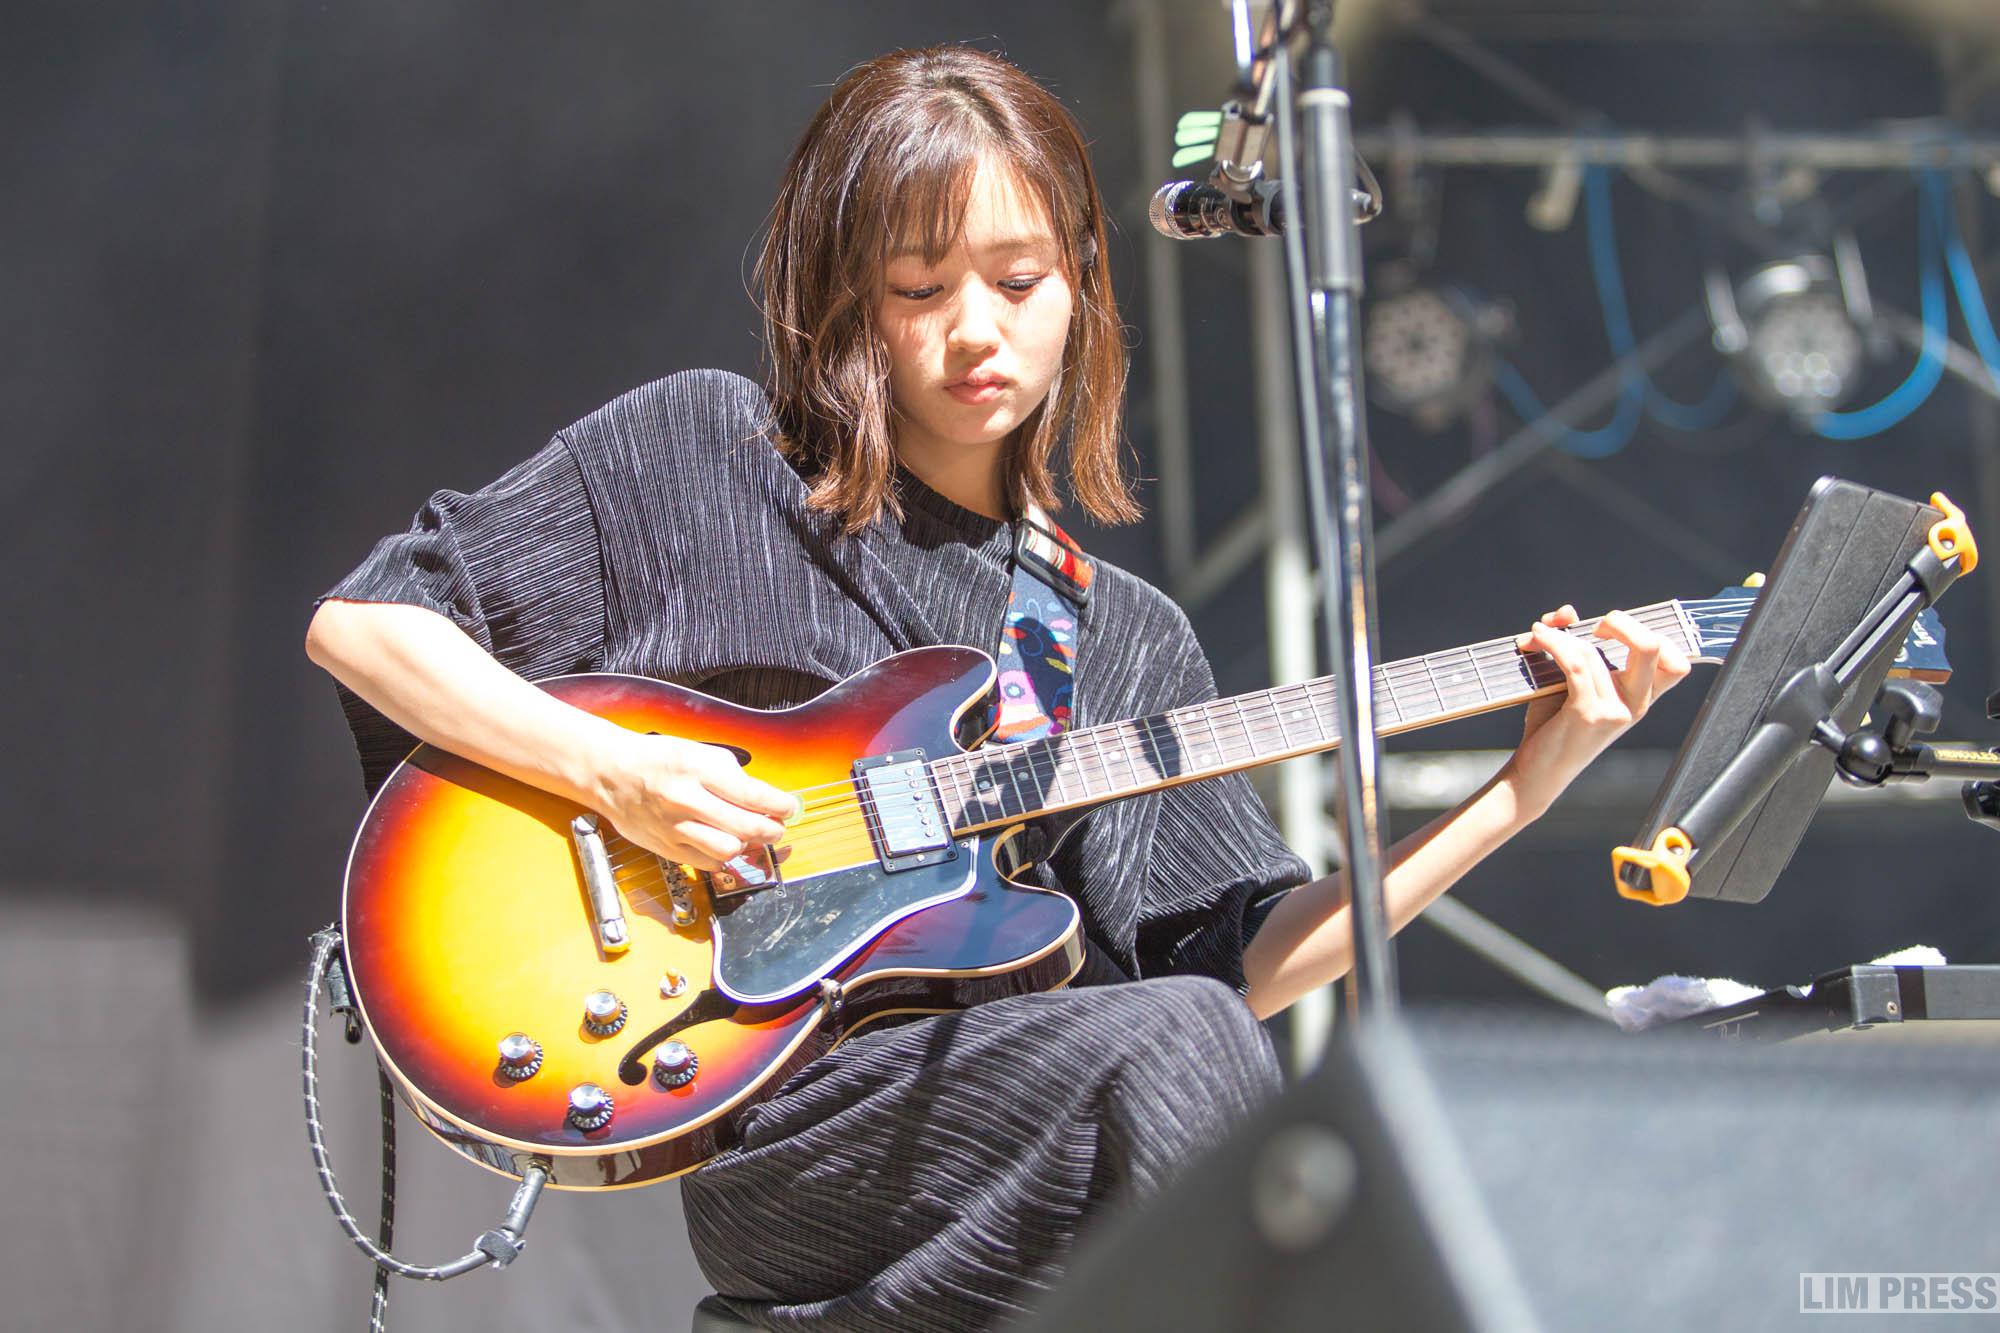 藤原さくら | 新潟 JIN ROCK FESTIVAL in KAMO 2019 | 2019.09.08